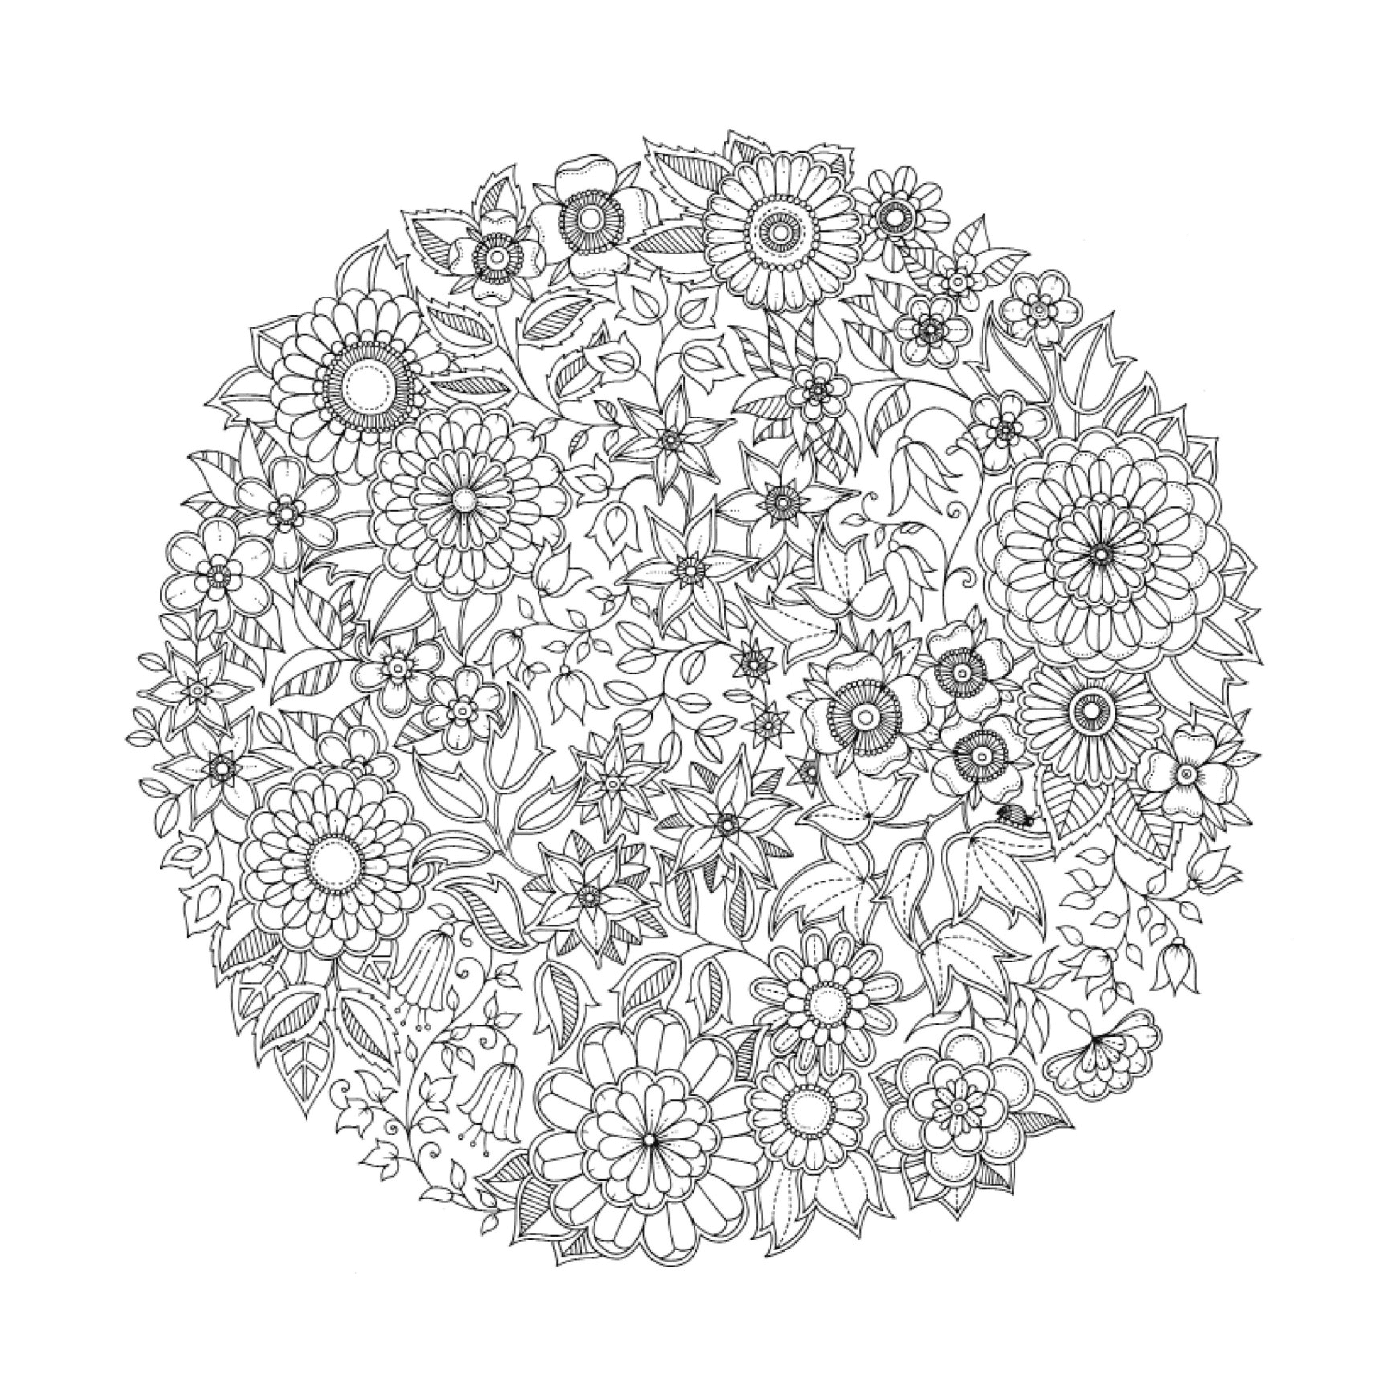  Modelo circular de flores em preto e branco 